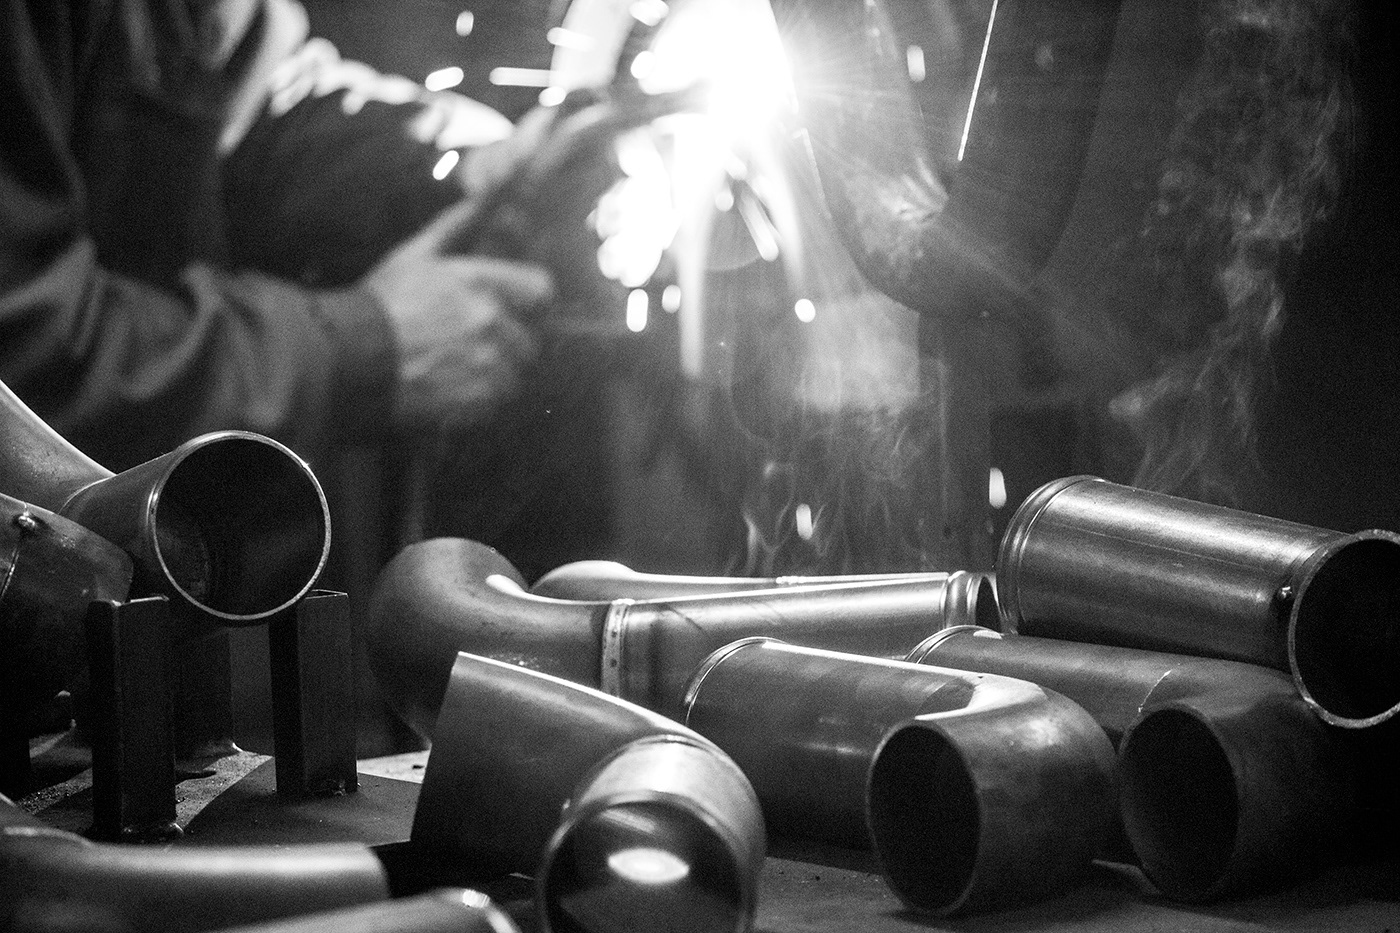 artisanat entreprise Metal worker Pipe savoir-faire soudure sparkles tube welding